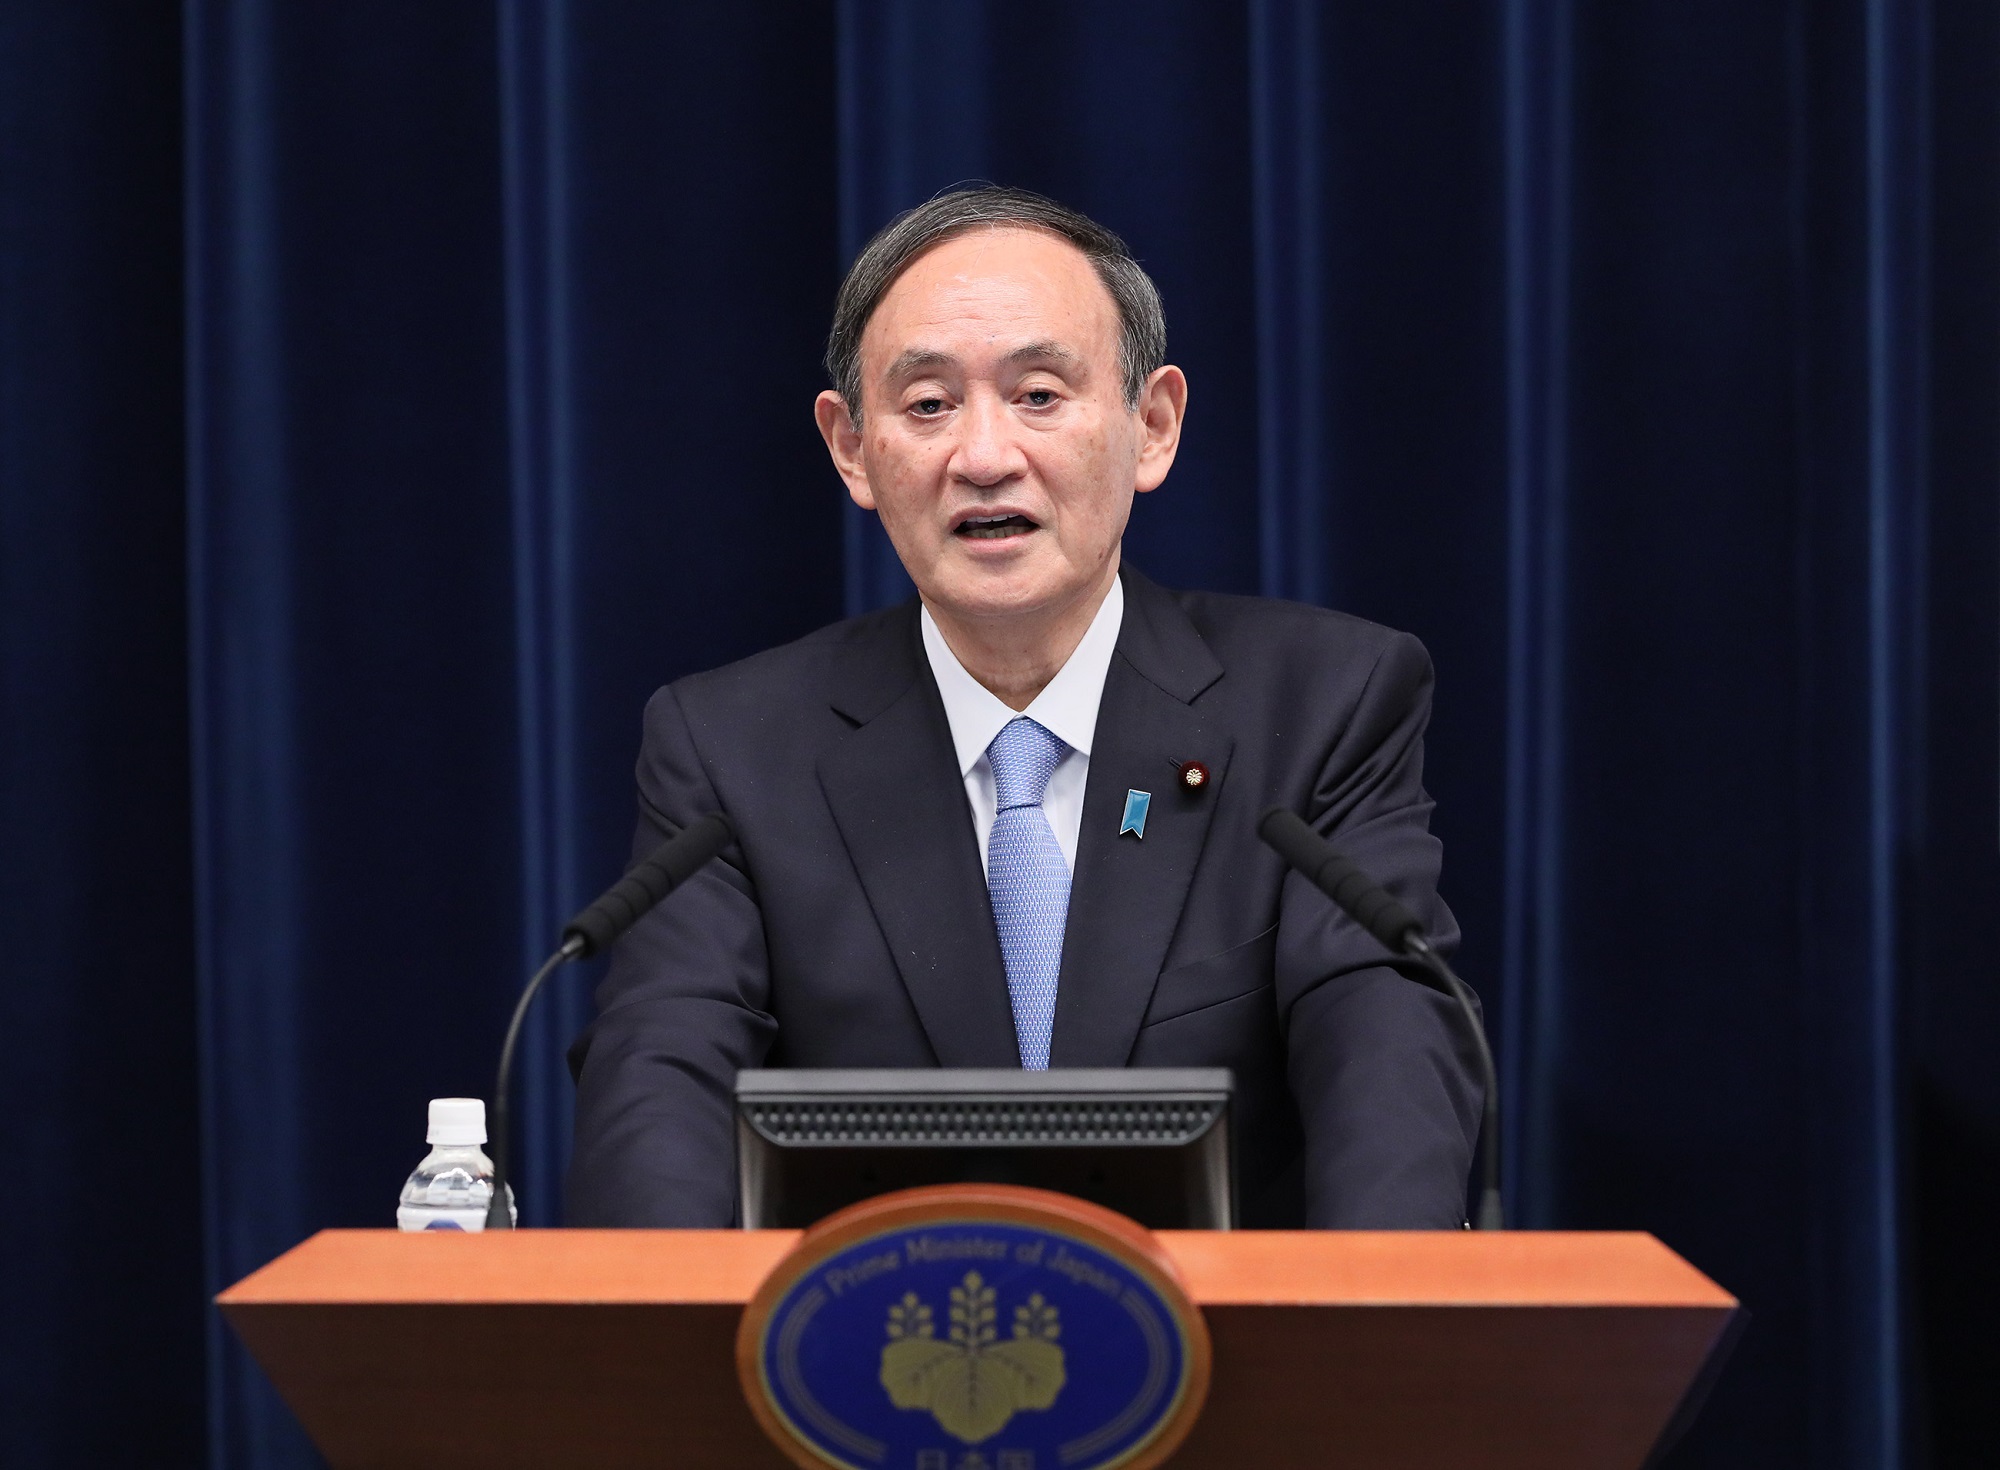 新型コロナウイルス感染症に関する菅内閣総理大臣記者会見